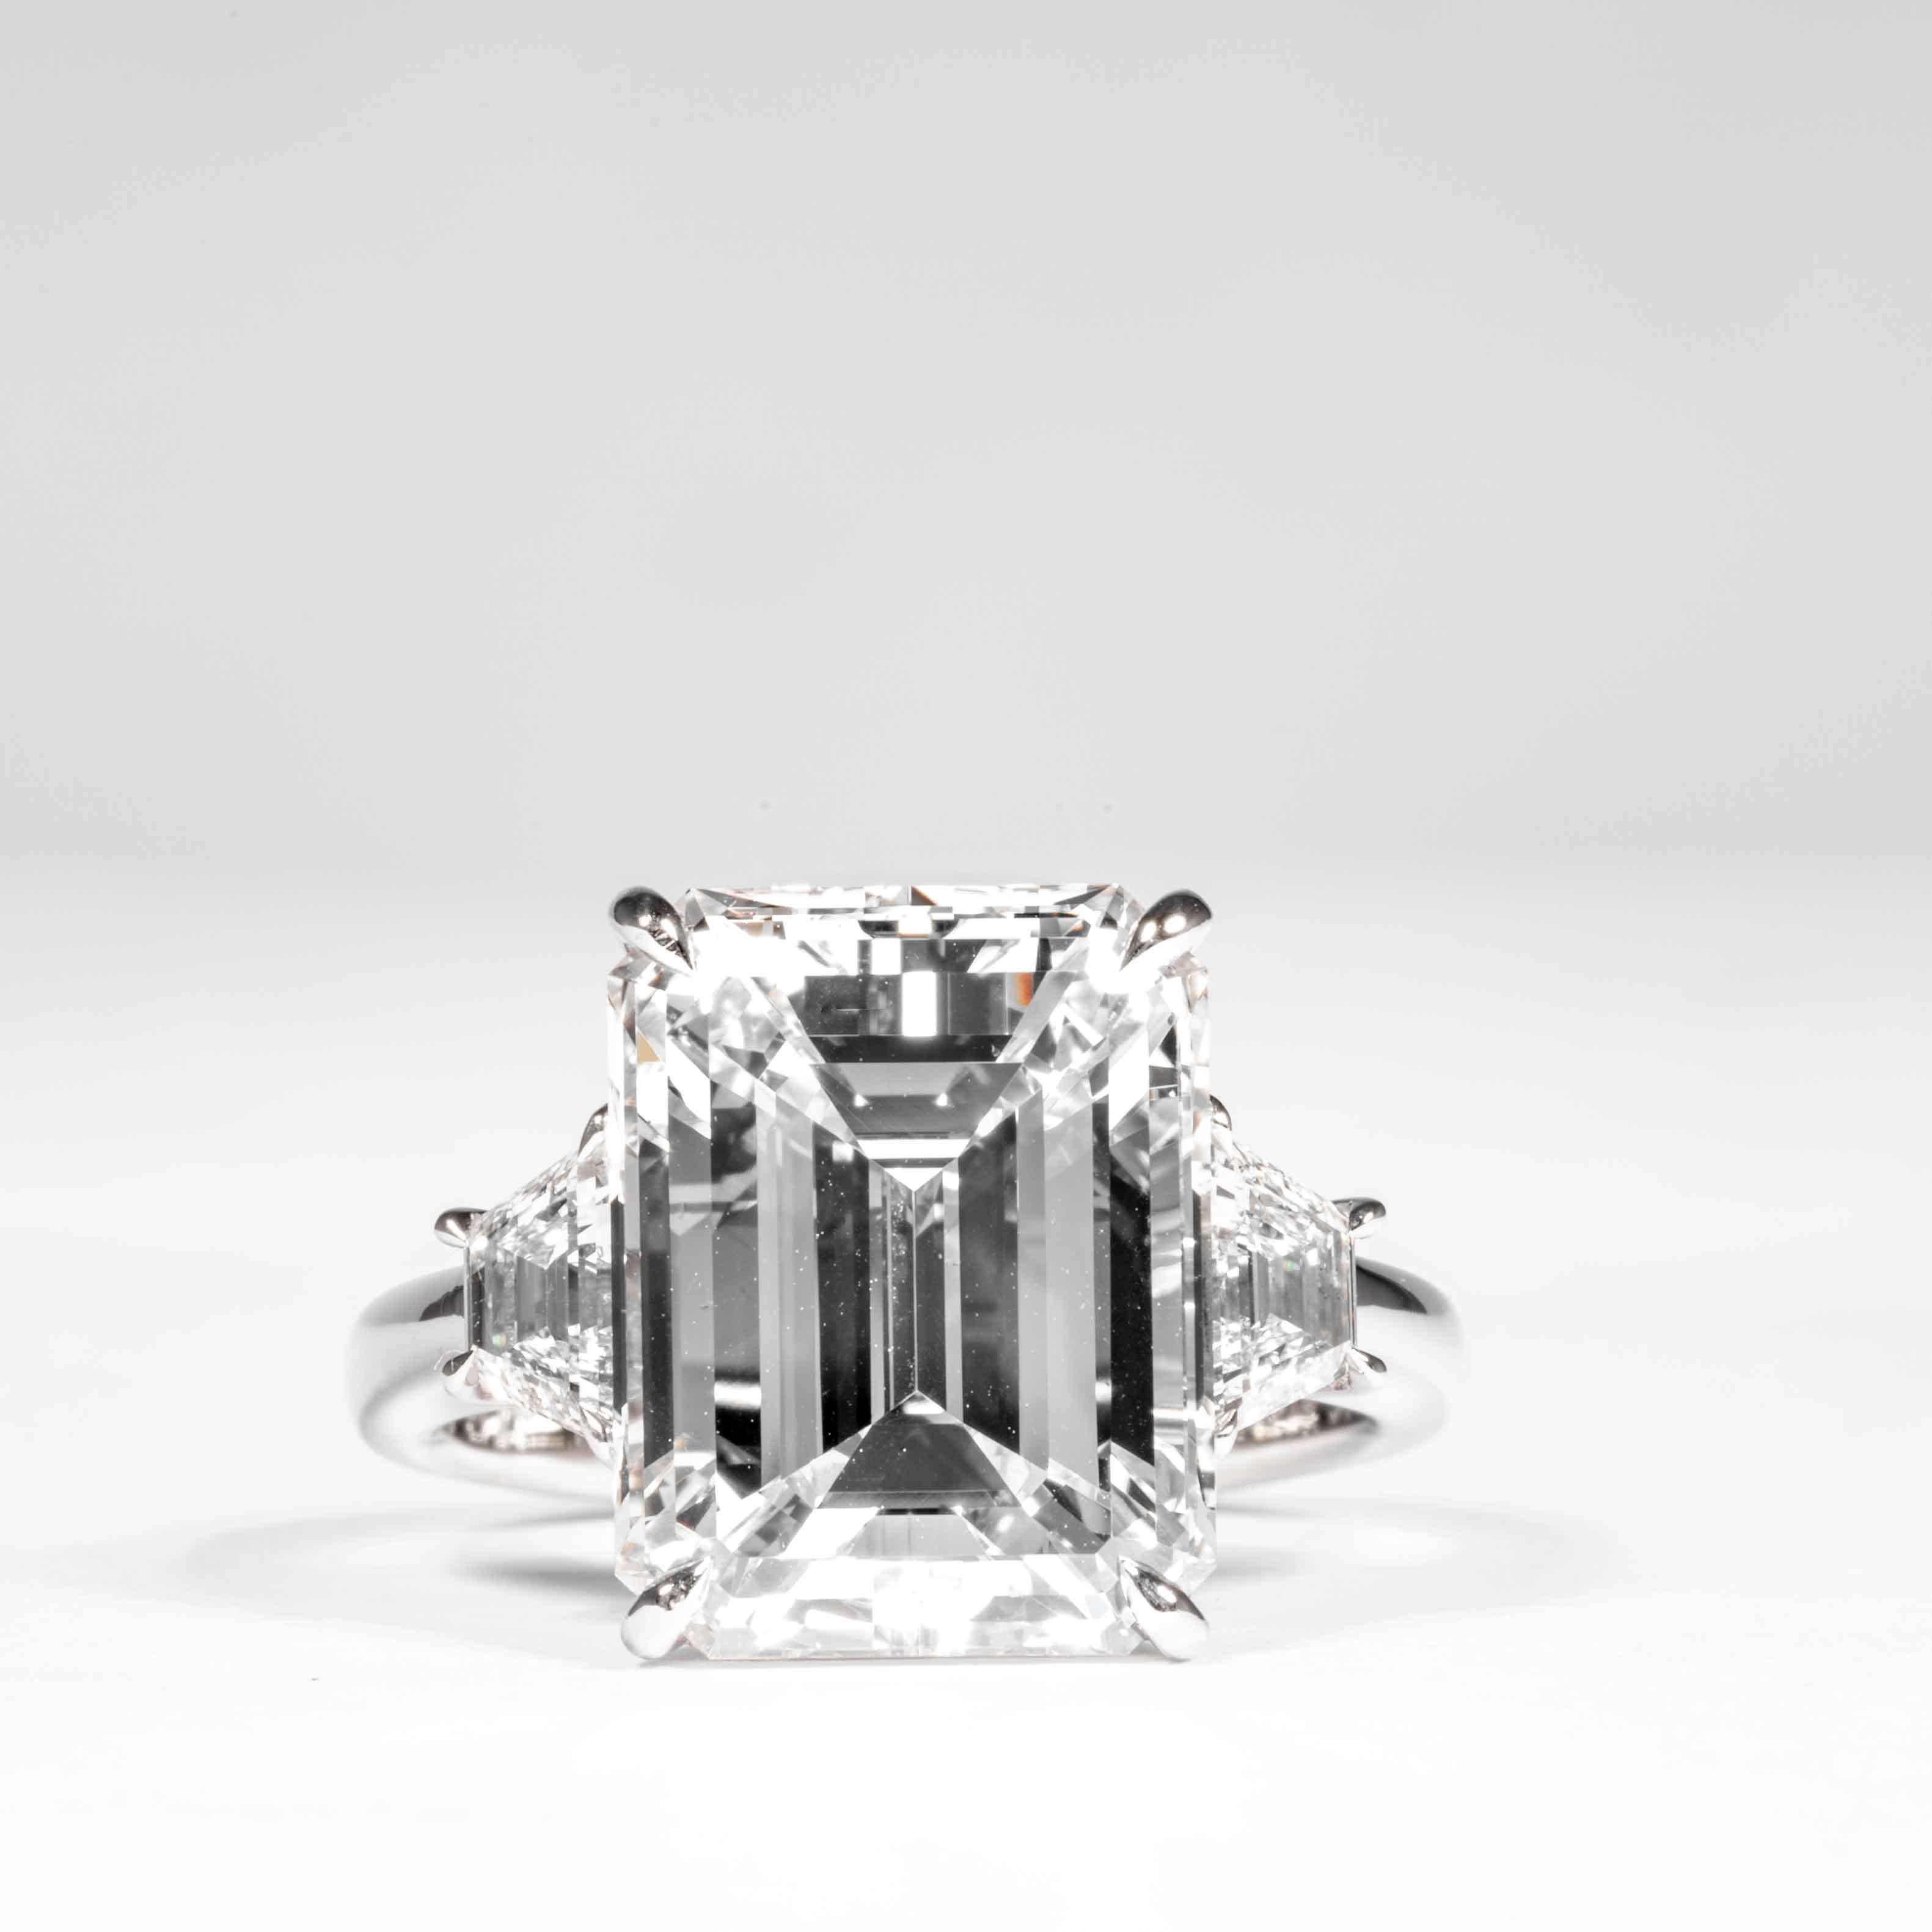 Cette bague en diamant à 3 pierres est offerte par Shreve, Crump & Low. Ce diamant taille émeraude de 8,97 carats certifié GIA G VS2 mesurant 13,70 x 10,64 x 6,95 mm est serti sur mesure dans une bague à trois pierres en platine fabriquée à la main